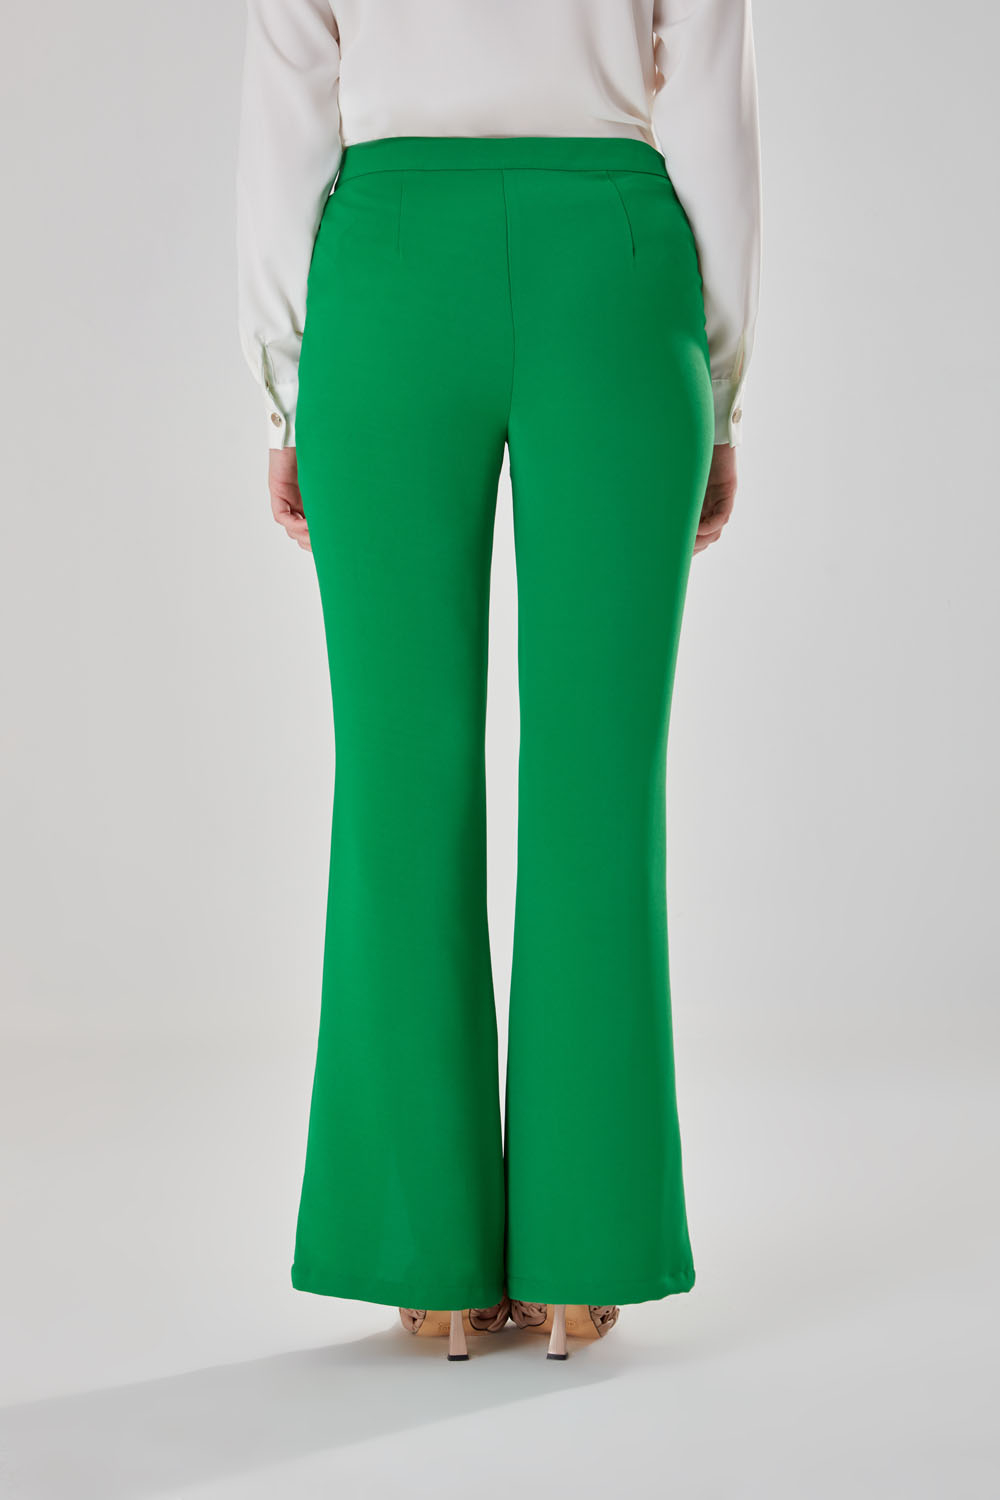 Önden Yırtmaçlı Yeşil Dokuma Yüksek Bel Pantolon